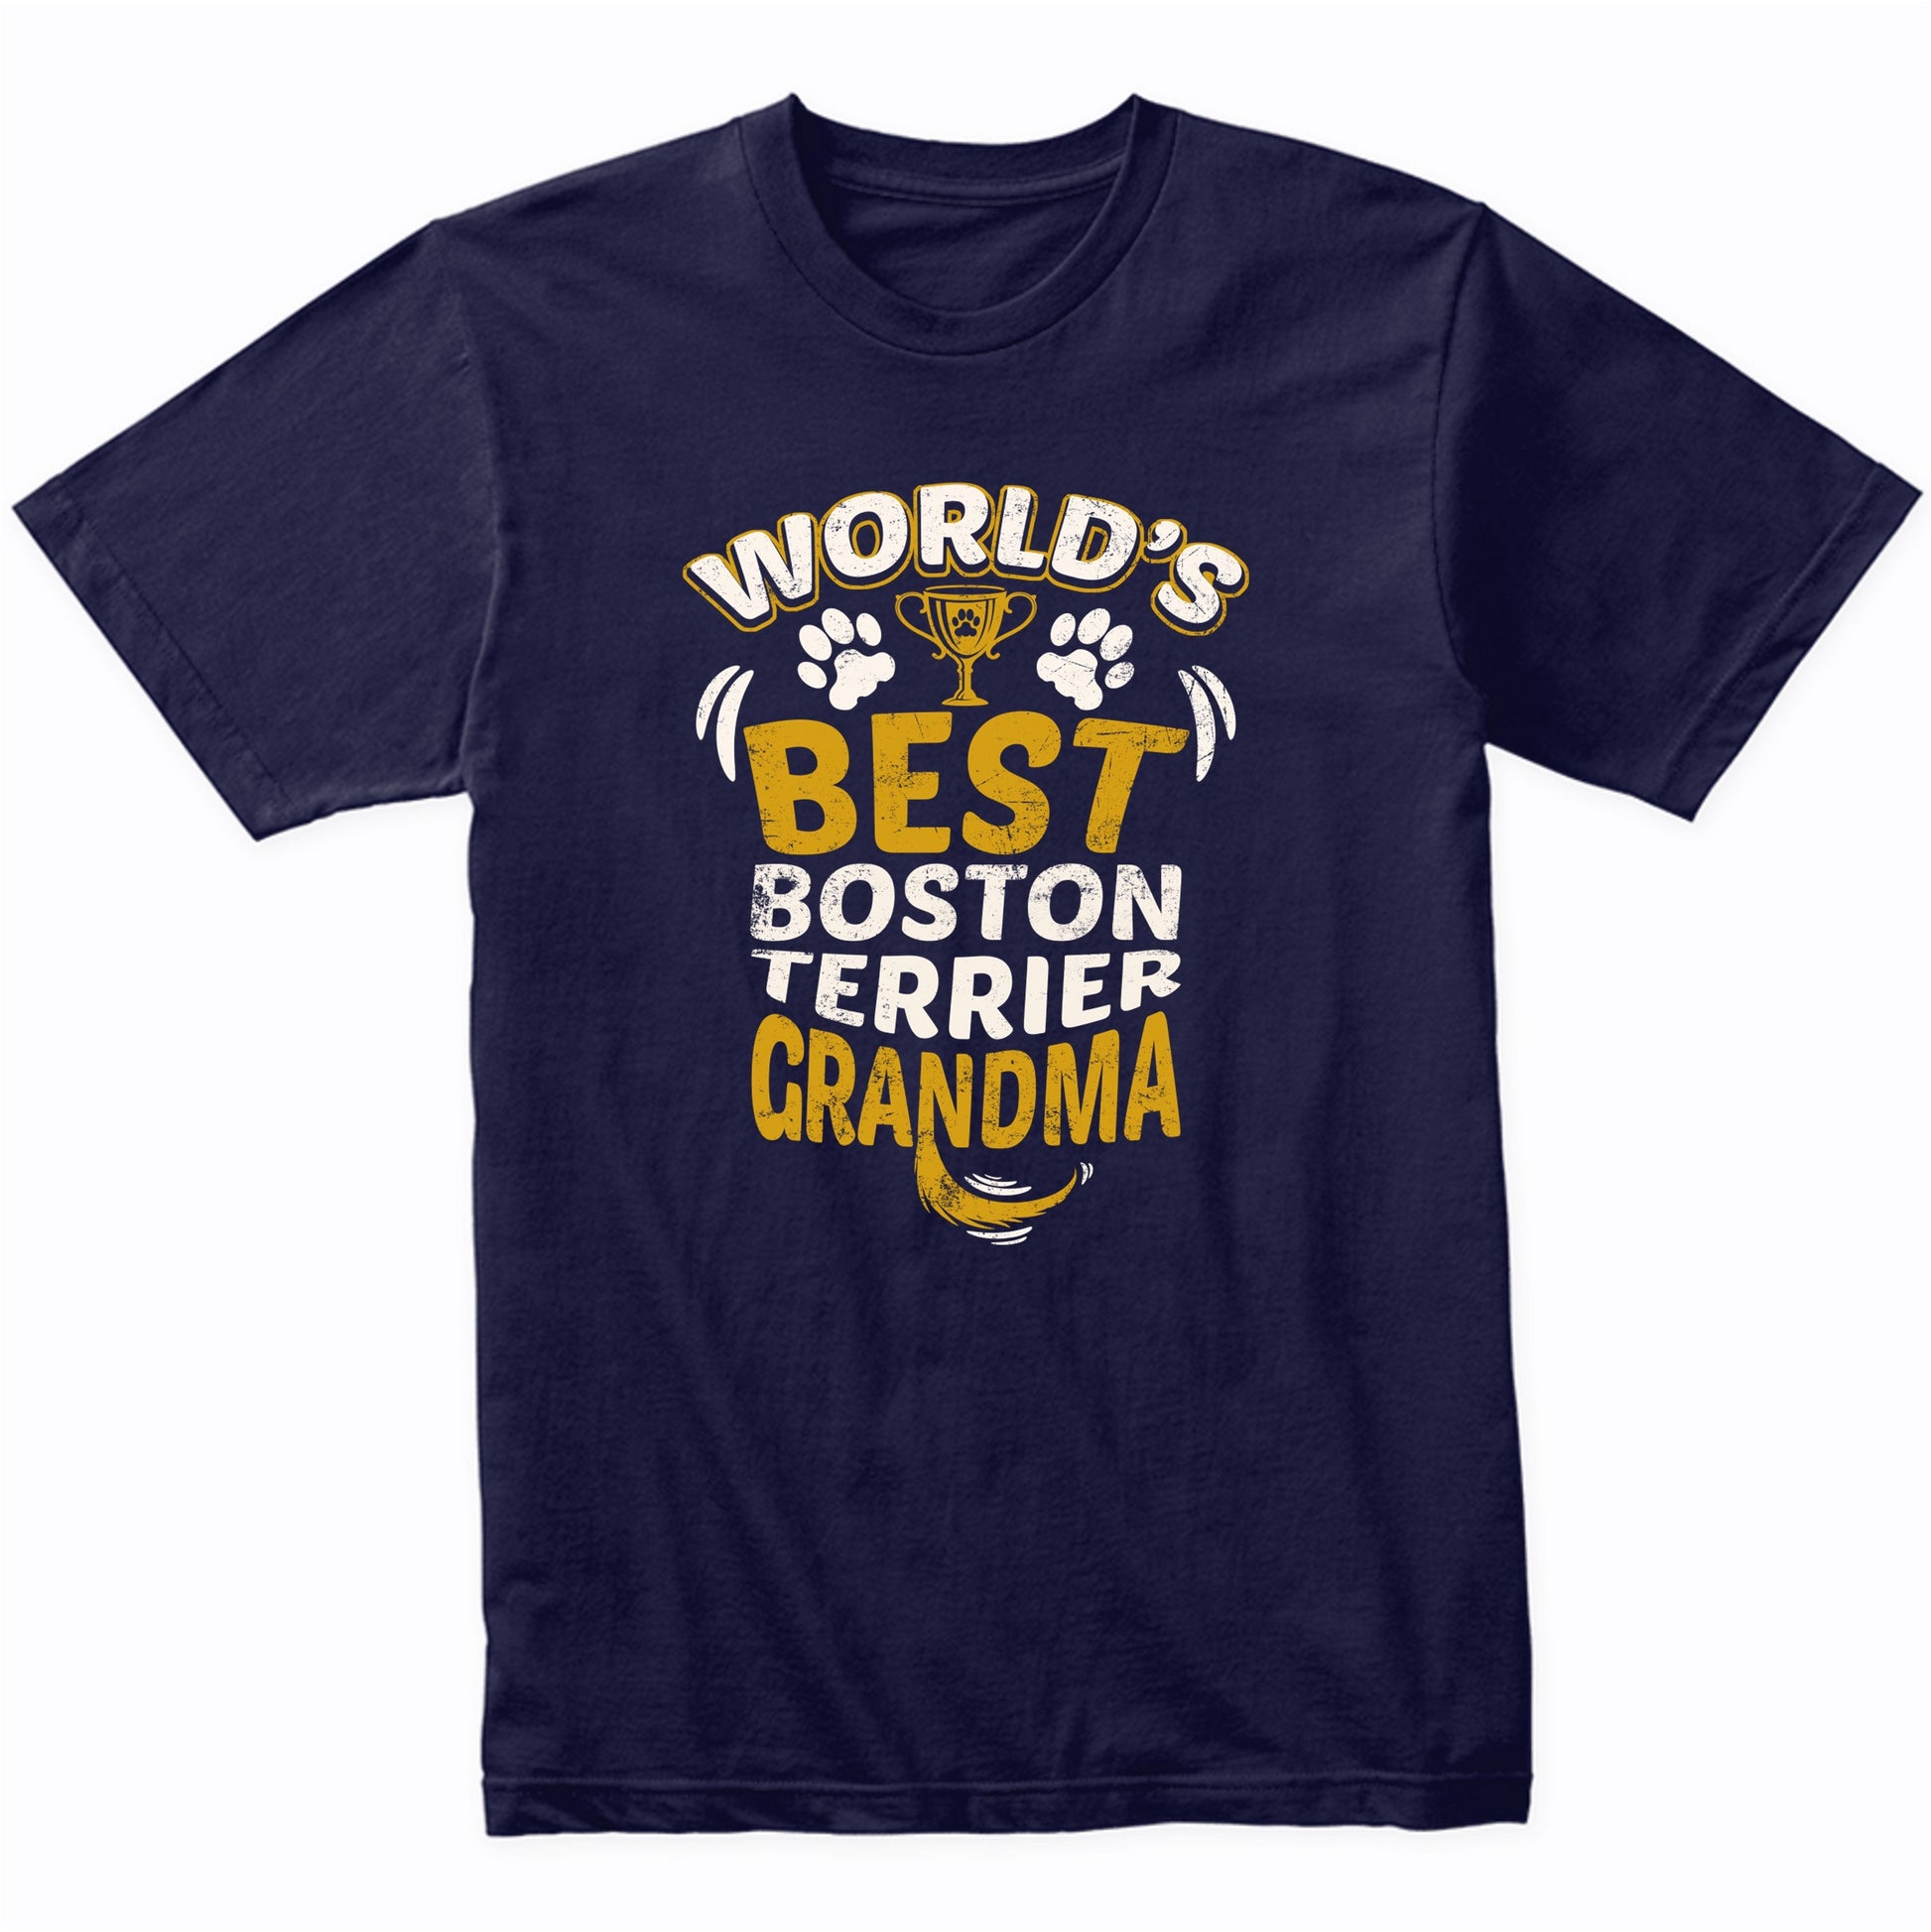 World's Best Boston Terrier Grandma Graphic T-Shirt